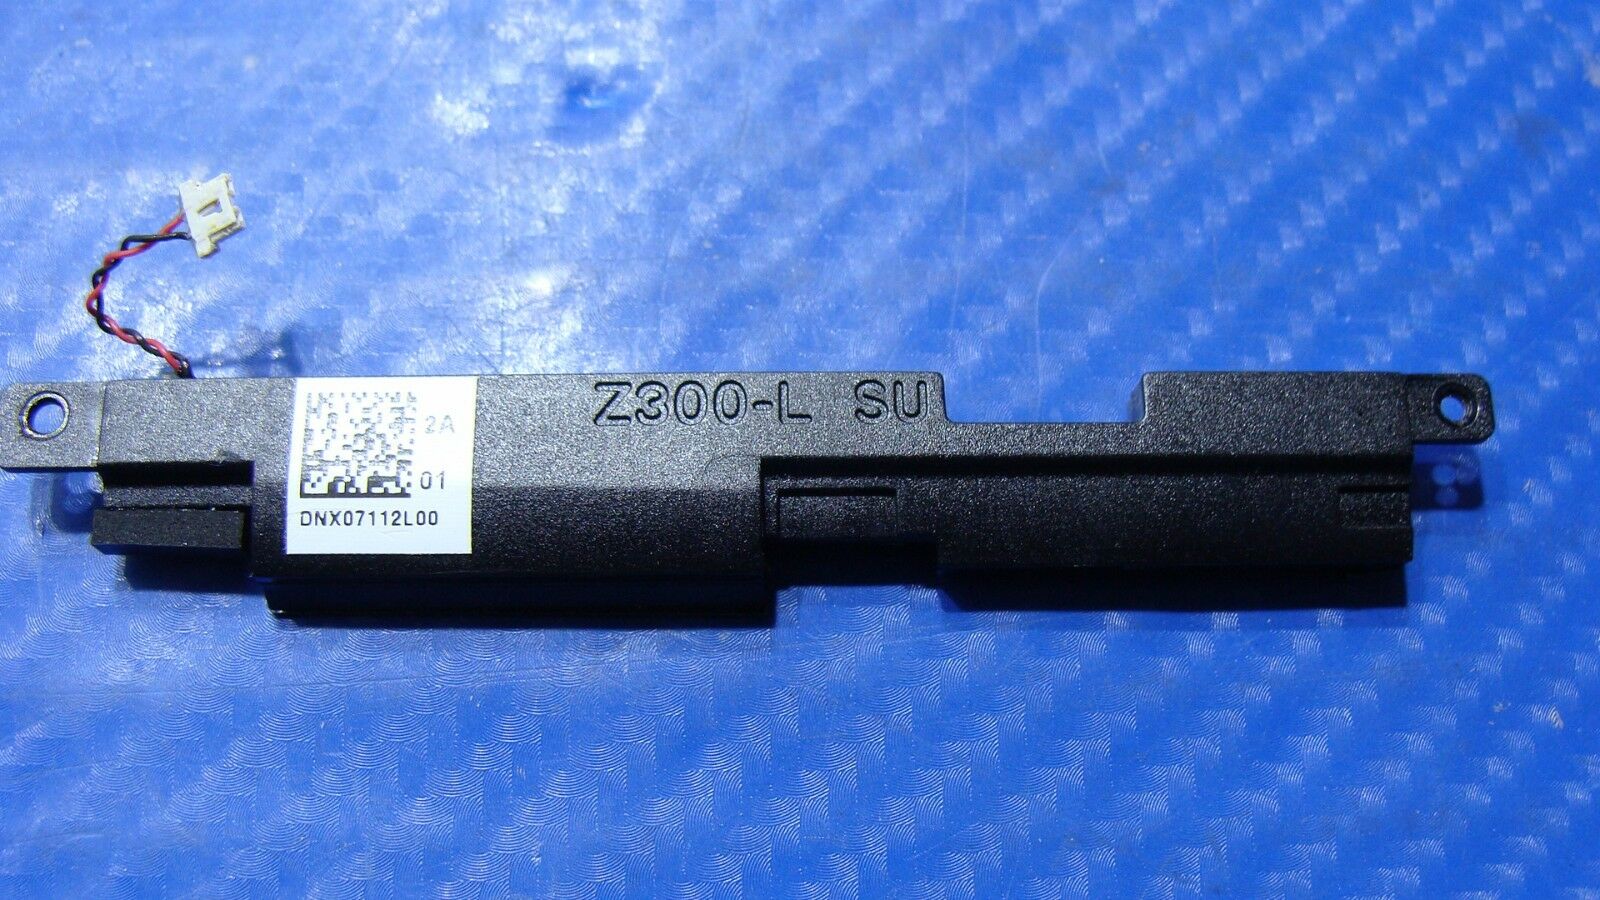 Asus ZenPad z300cl 10.1